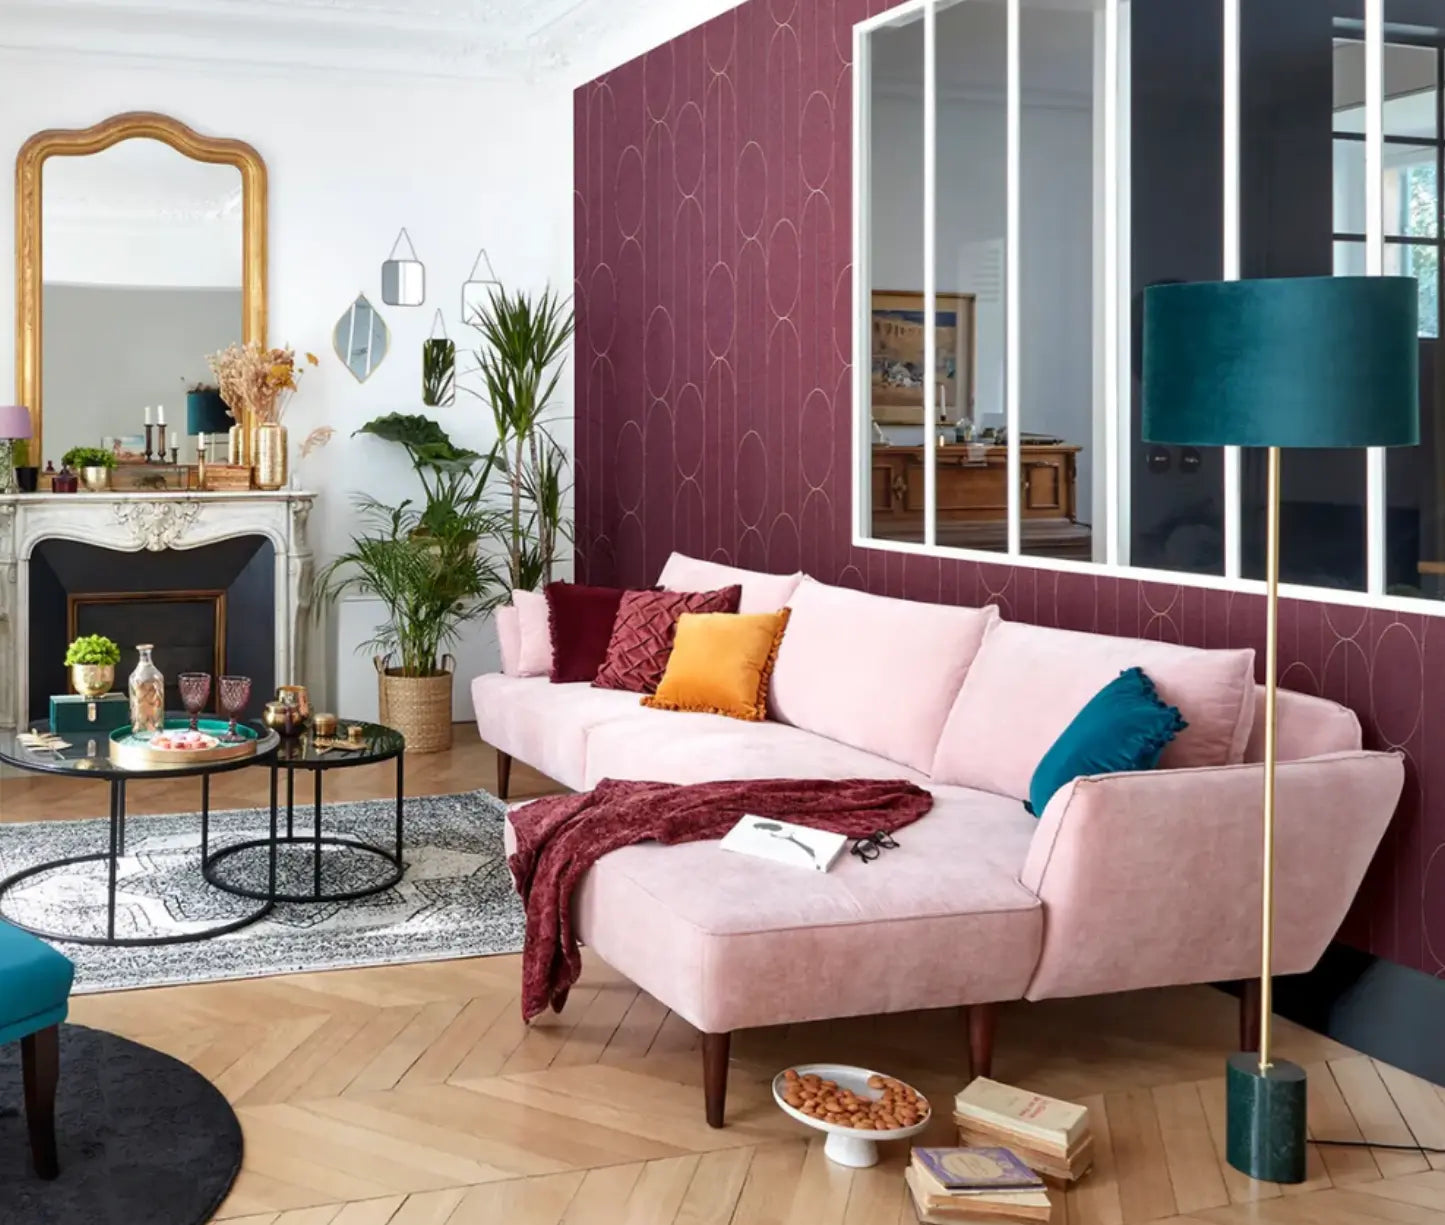 canapé d'angle rose dans un salon avec une cheminée, un miroir, une cloison vitrée, une lampe bleu, des plantes vertes, un mur bordeaux